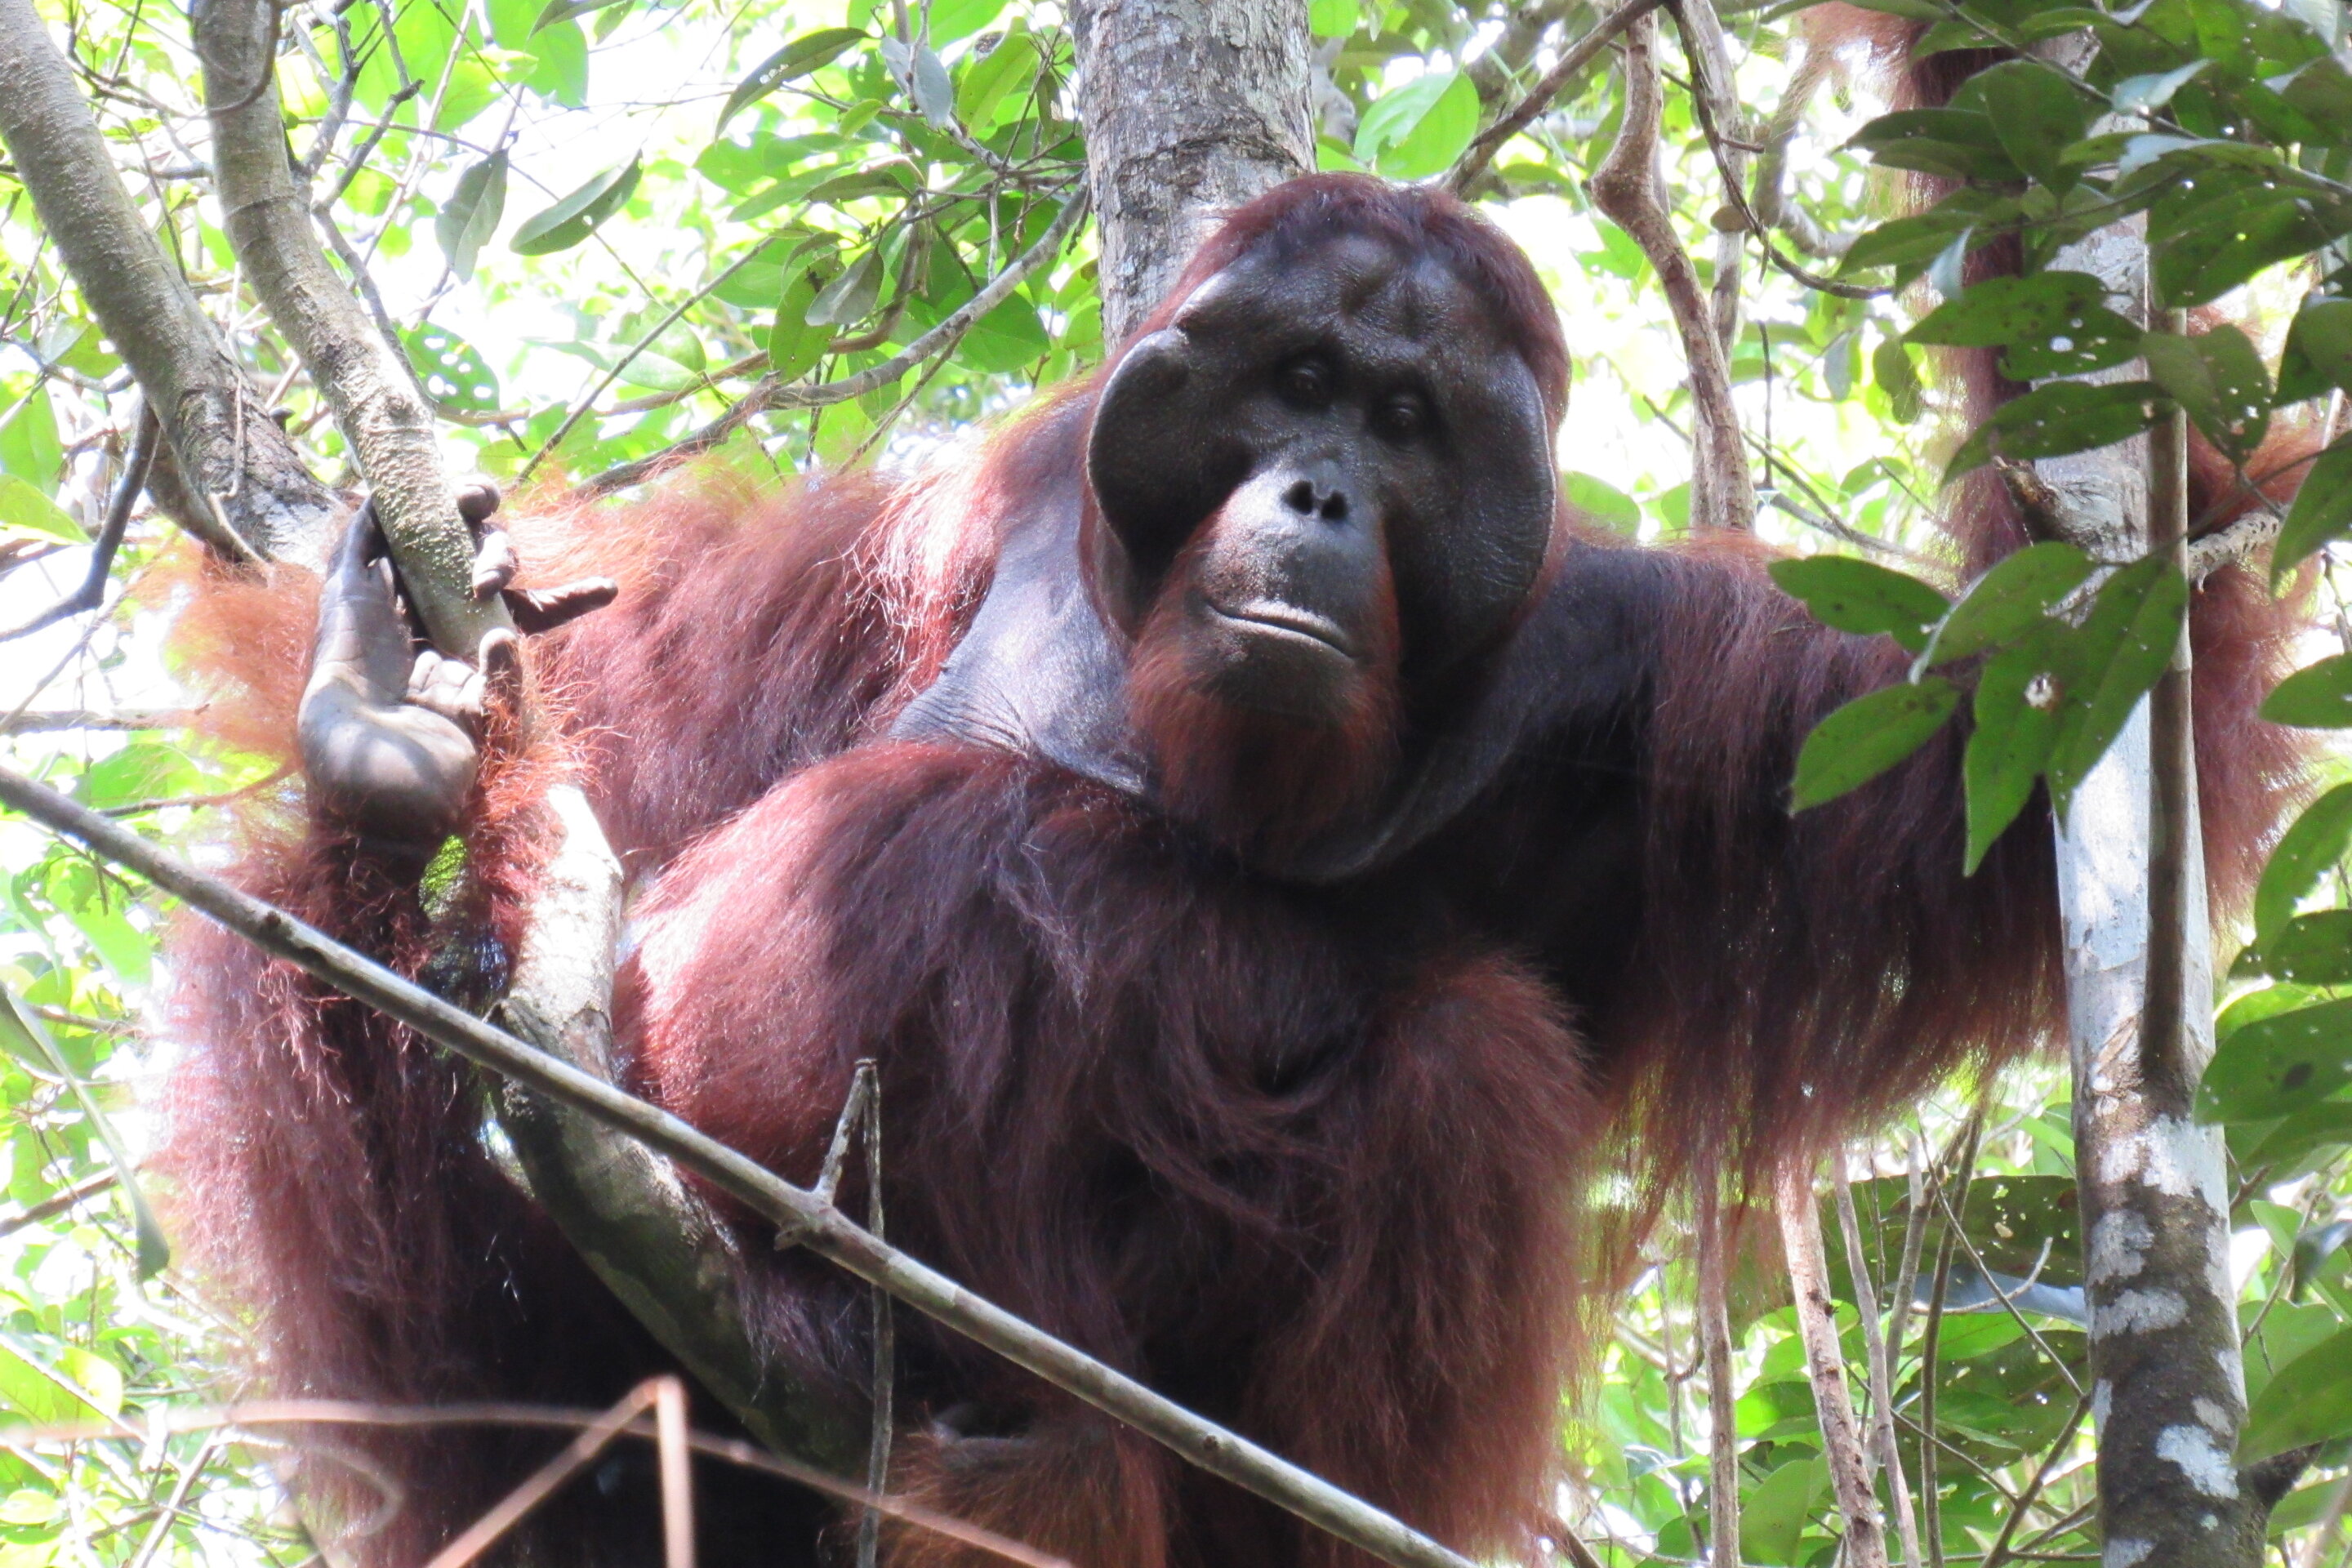 El éxito del orangután macho no se debe sólo a la dominancia, según un estudio